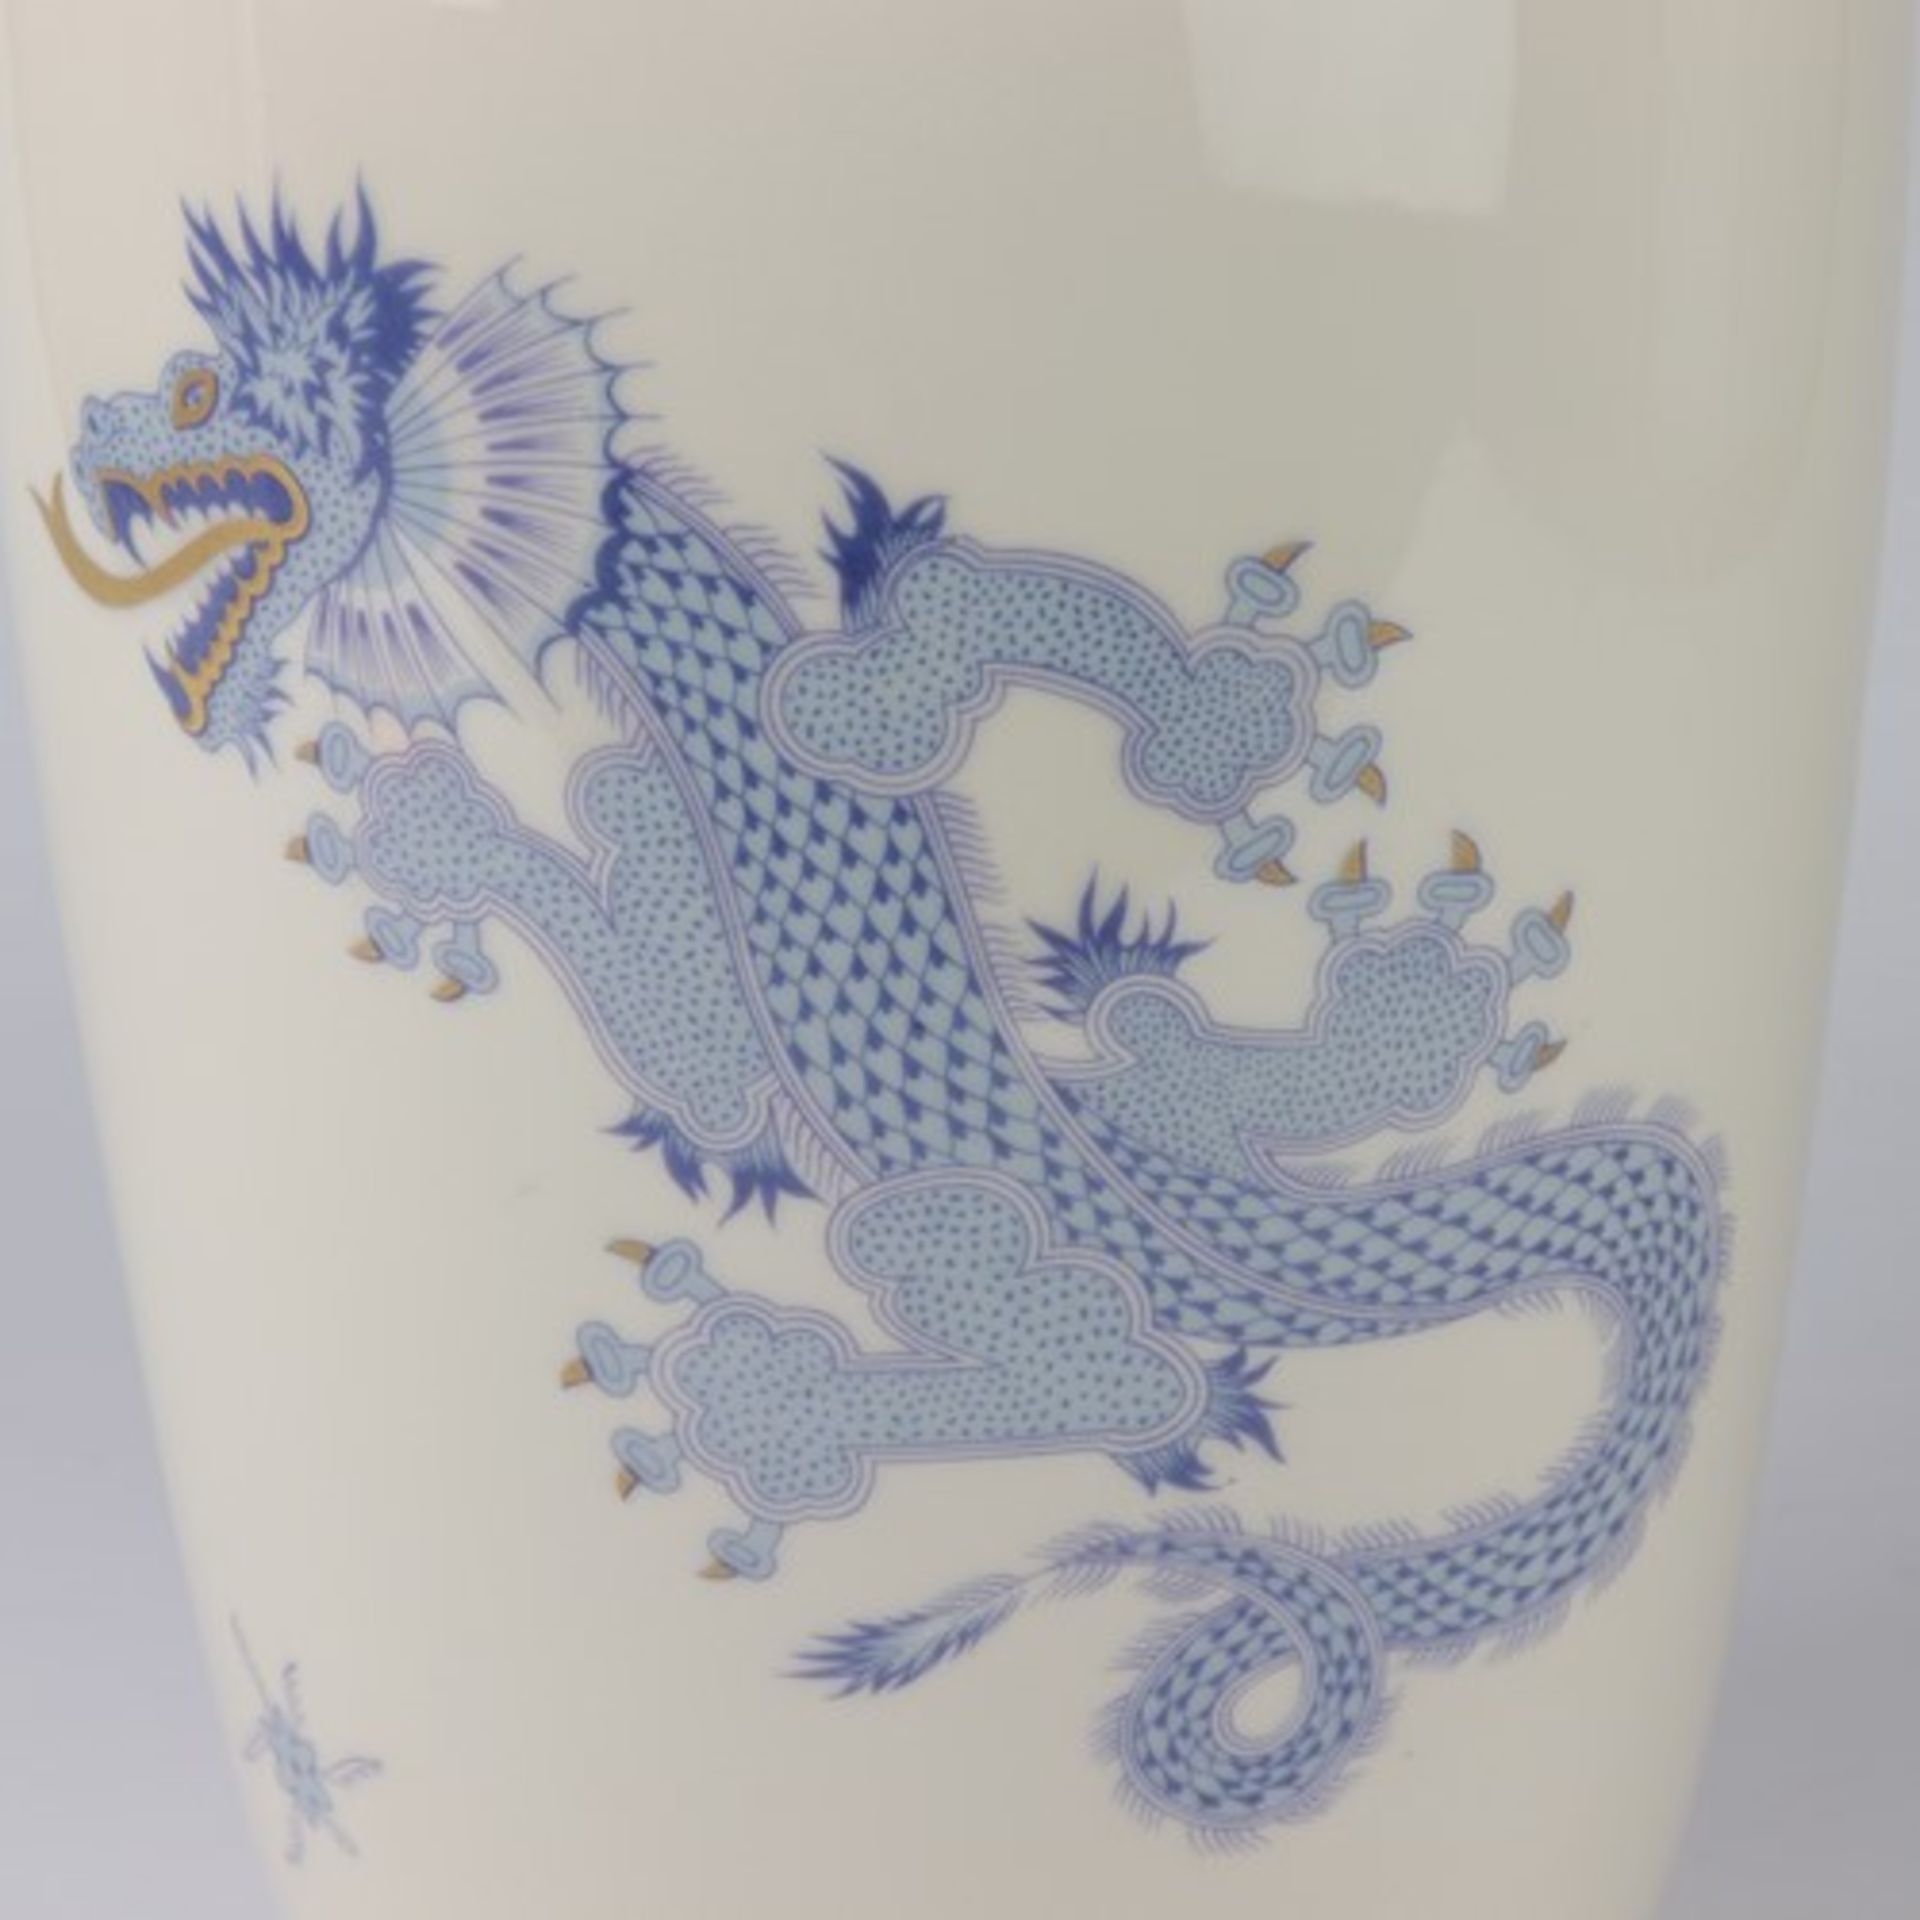 Lichte - Vasegrüne Marke, Balusterform, Vorder u. Rückseite m. stilisierten Drachen in Blau- u. - Bild 3 aus 5